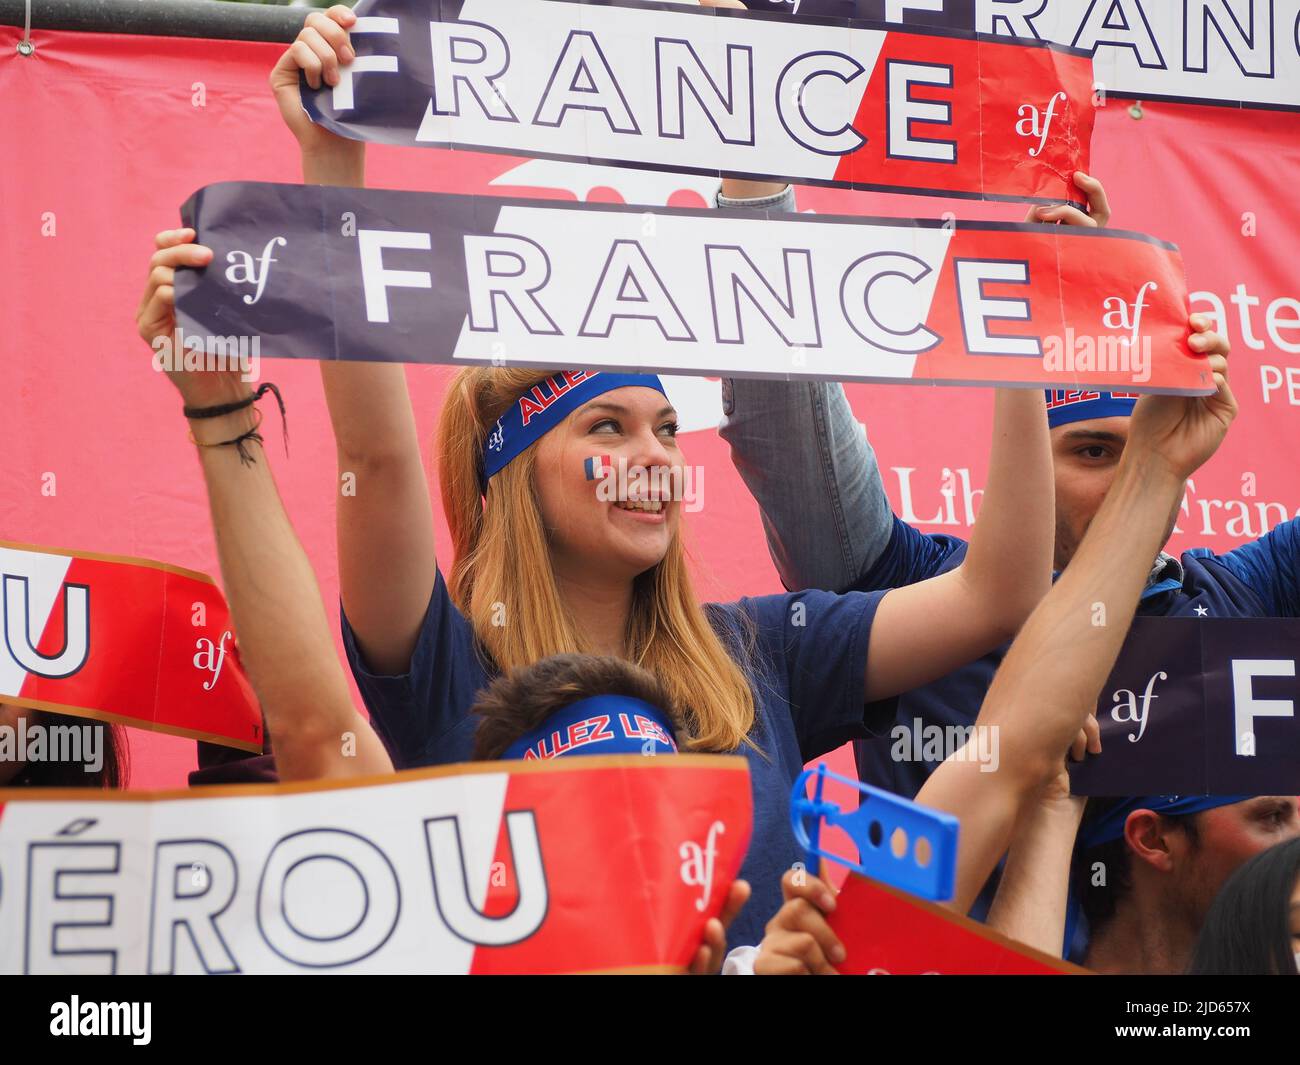 Ein blondes französisches Mädchen, das mit Spruchbändern umgeht, Fan des französischen Fußballteams, das beim Spiel „Alliance Francaise“ in Miraflores bei der Russland WM 2018 Peru gegen Frankreich zuschaut. Peru nimmt zum ersten Mal seit 36 Jahren an der FIFA Fußball-Weltmeisterschaft 2018 Teil. Stockfoto